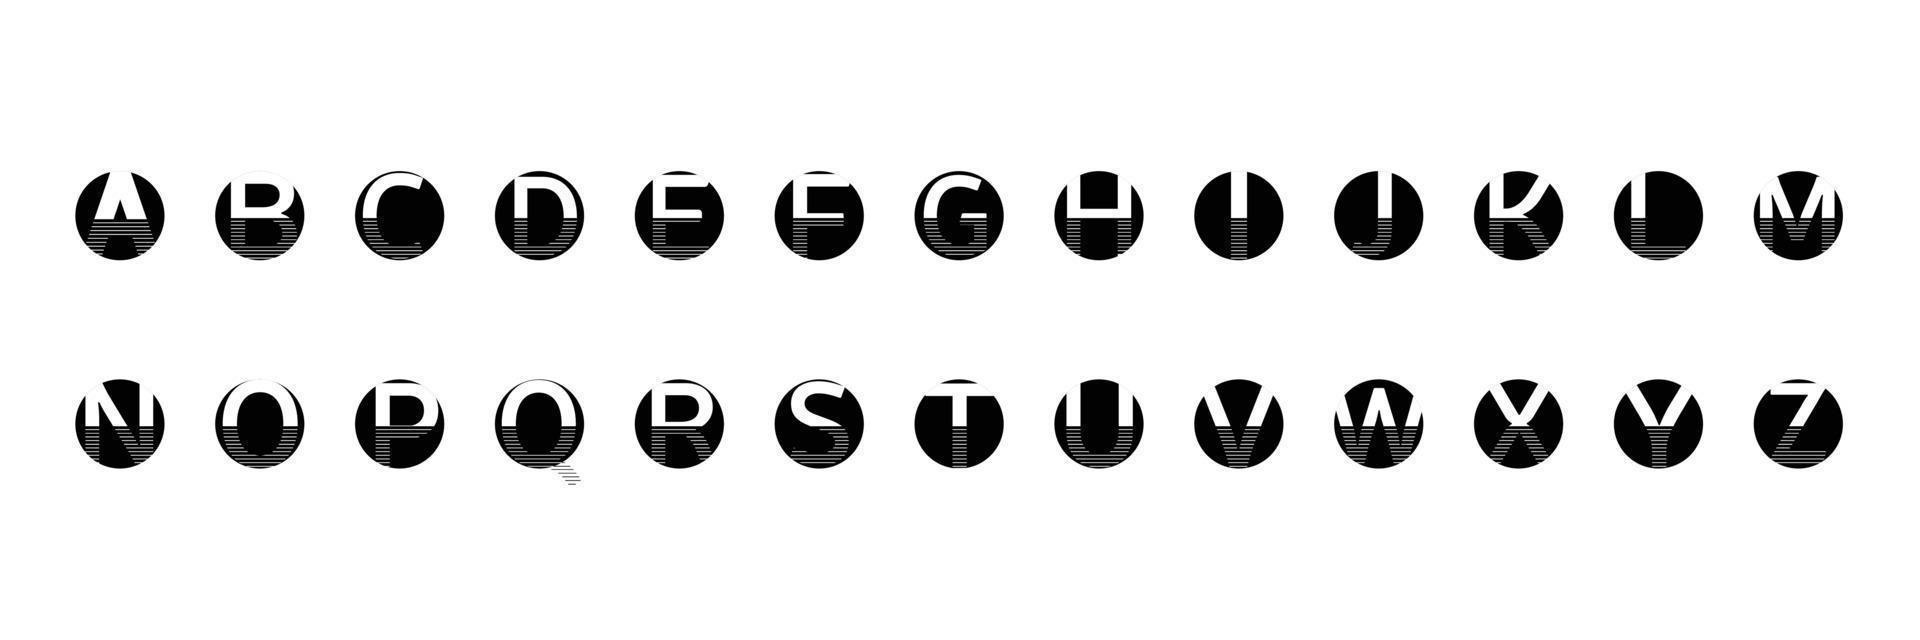 círculos pretos do alfabeto inglês com linha em um fundo branco vetor